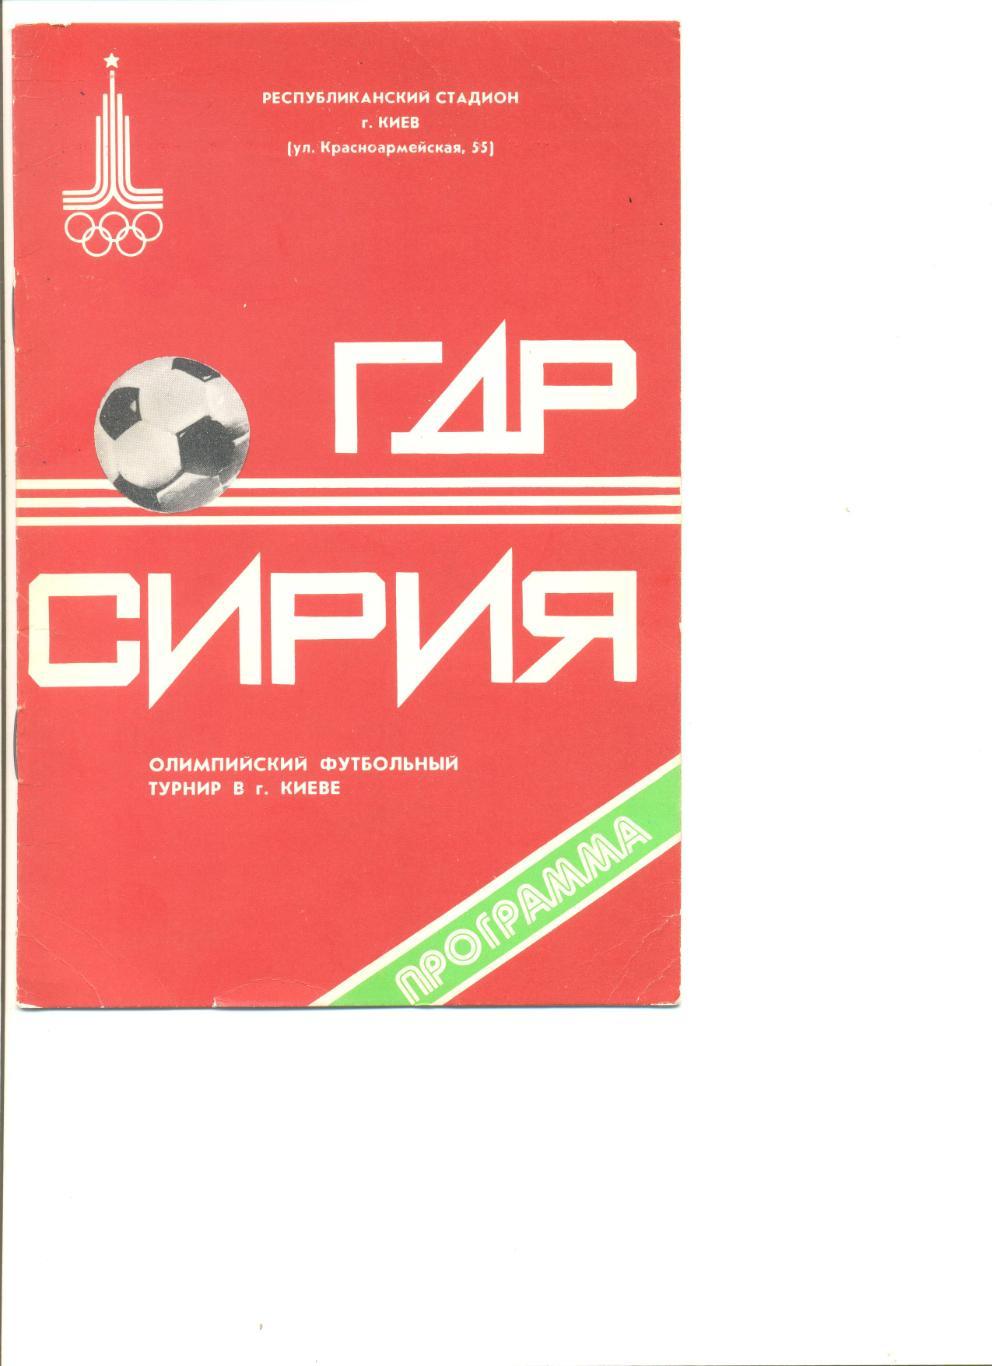 ГДР - Сирия 24.07.1980 г. Киев. Олимпийский футбольный турнир.